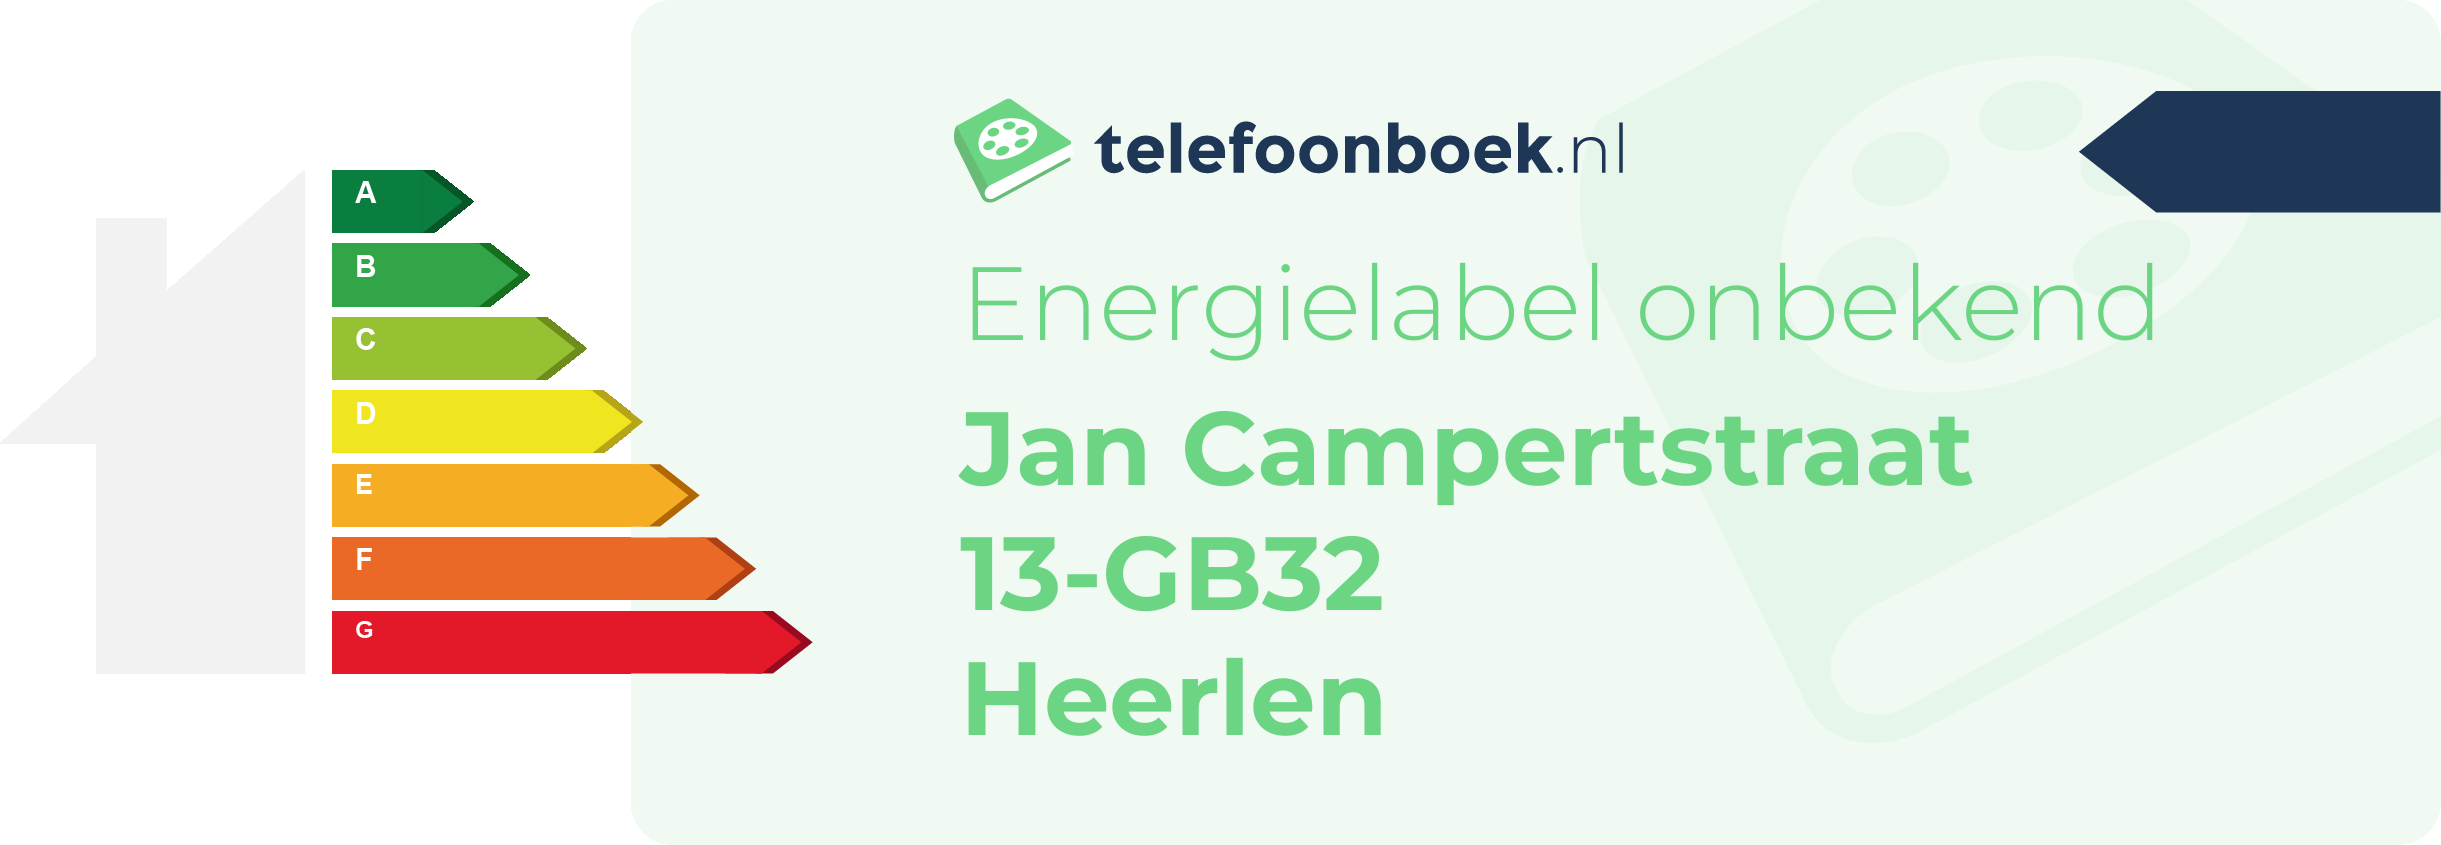 Energielabel Jan Campertstraat 13-GB32 Heerlen